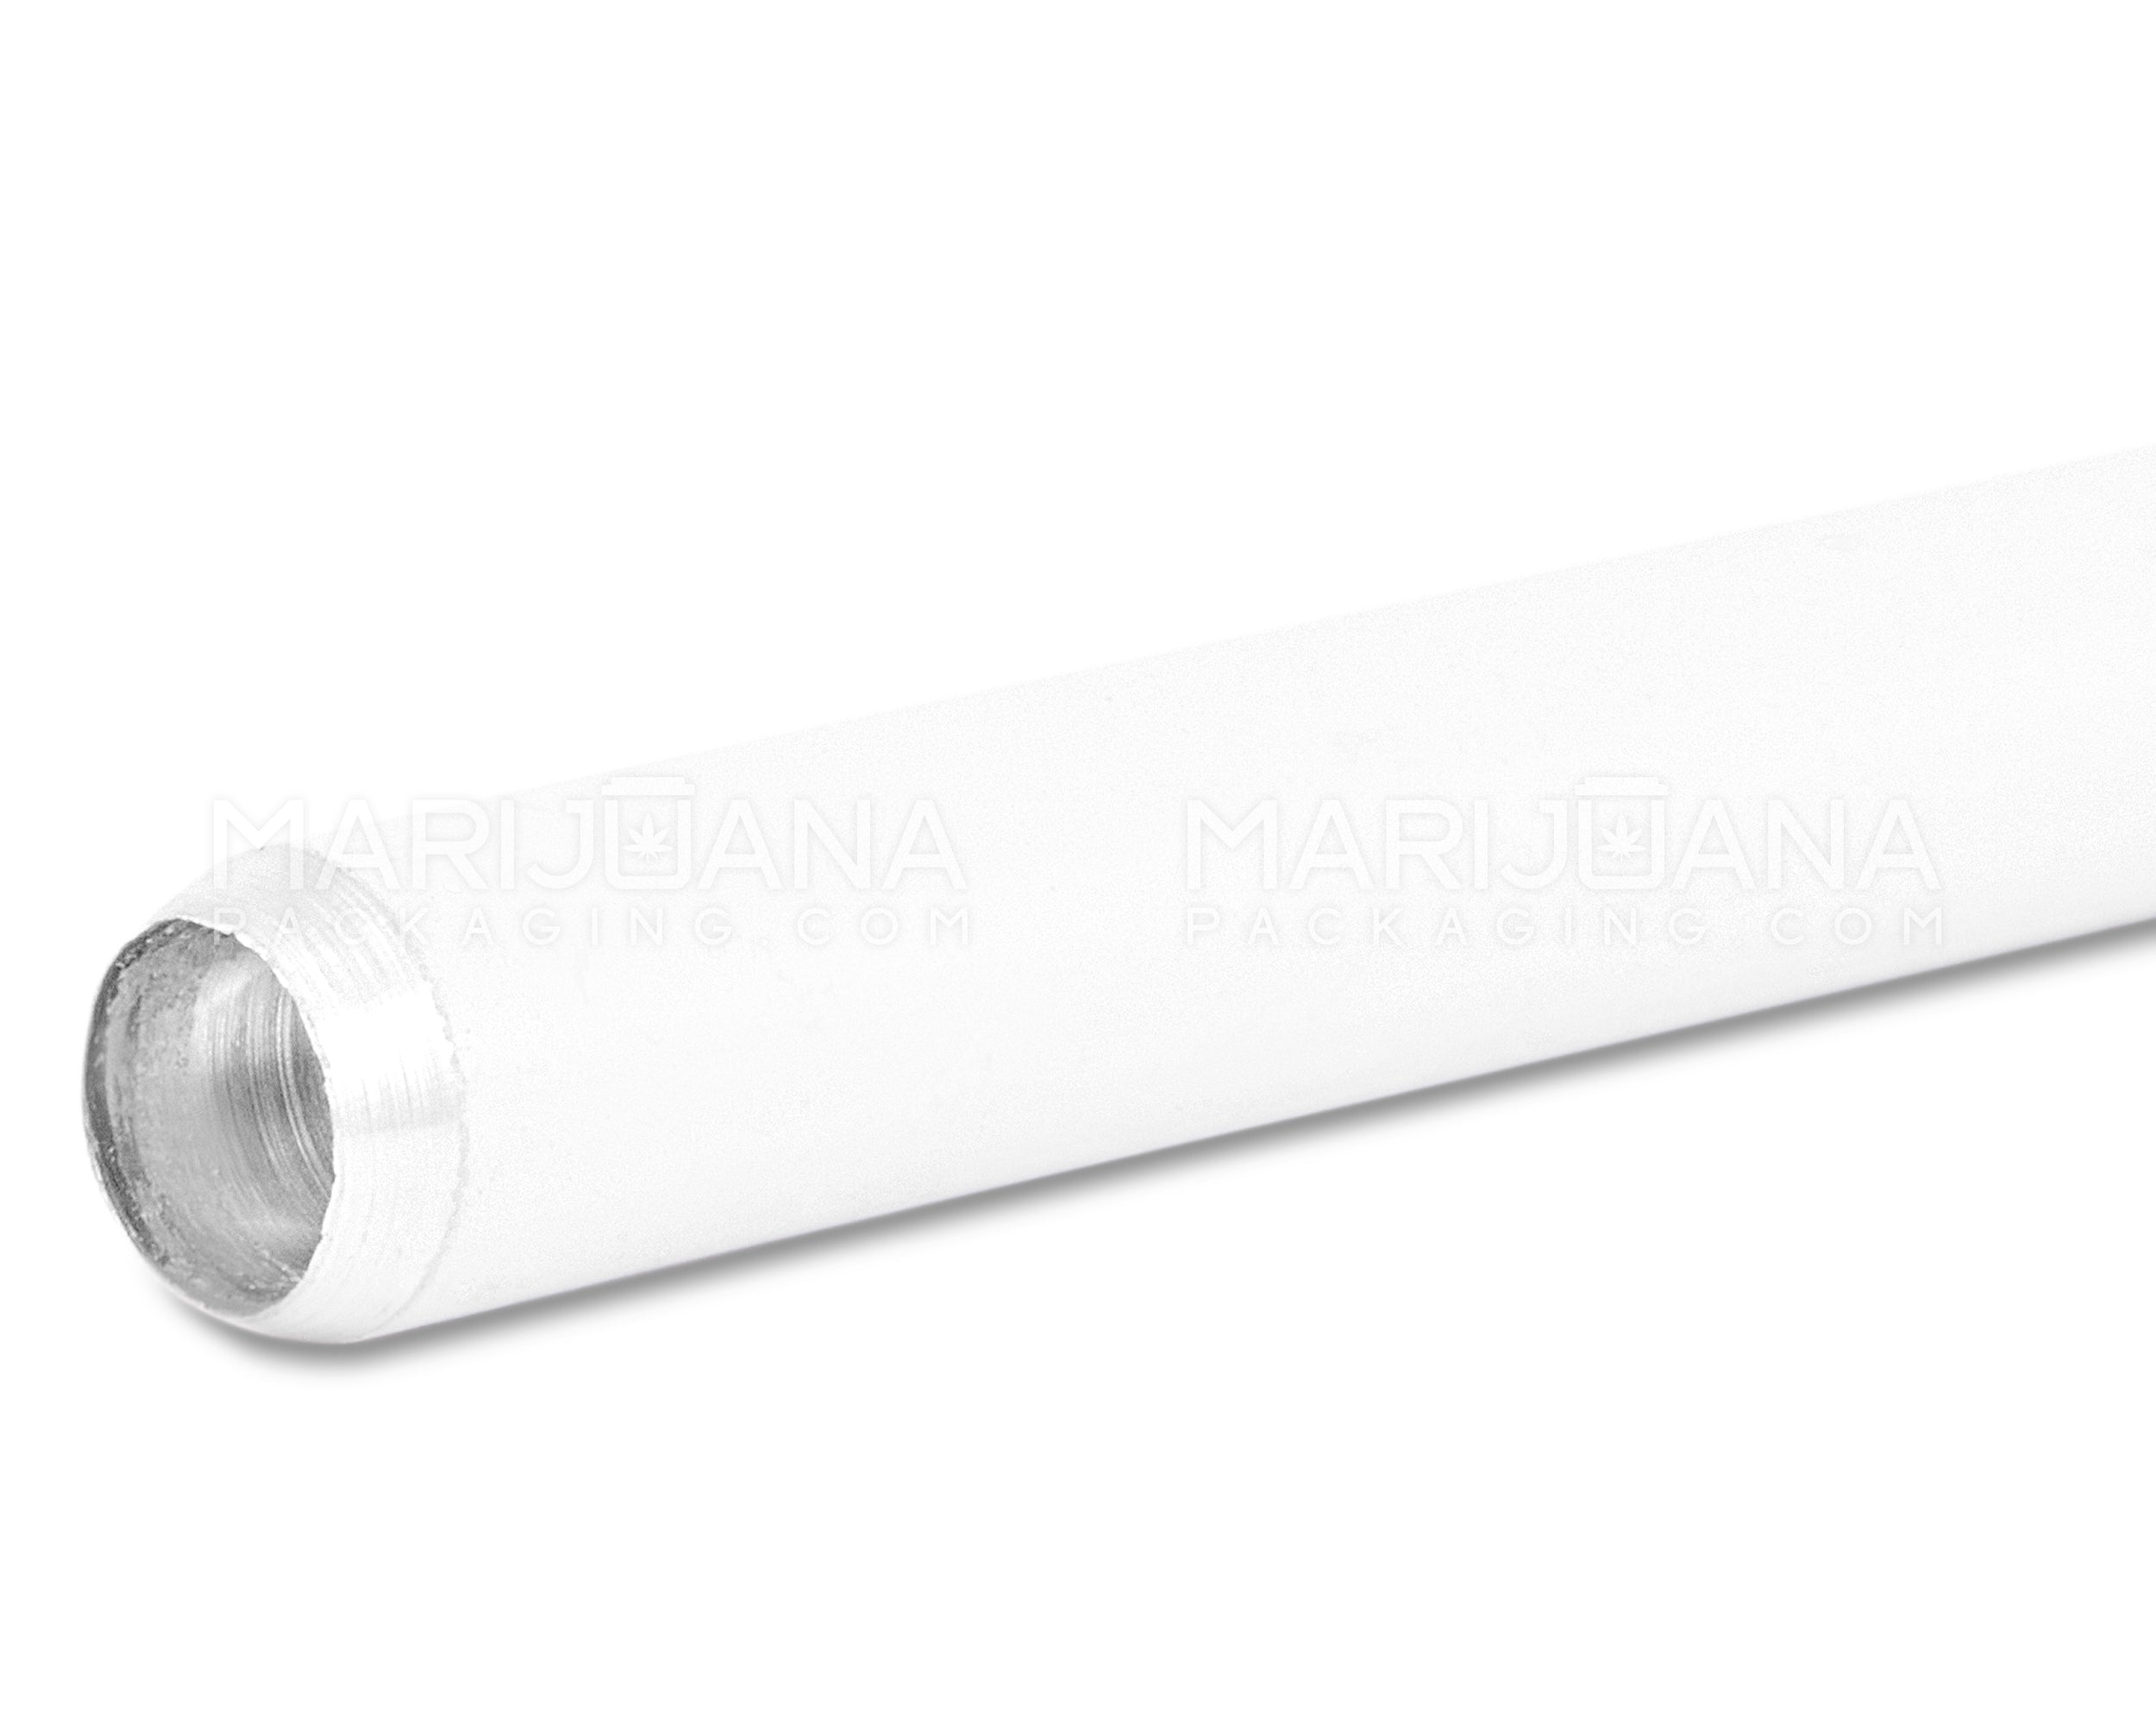 Cigarette Chillum Hand Pipe | 3in Long - Metal - Orange & White - 5